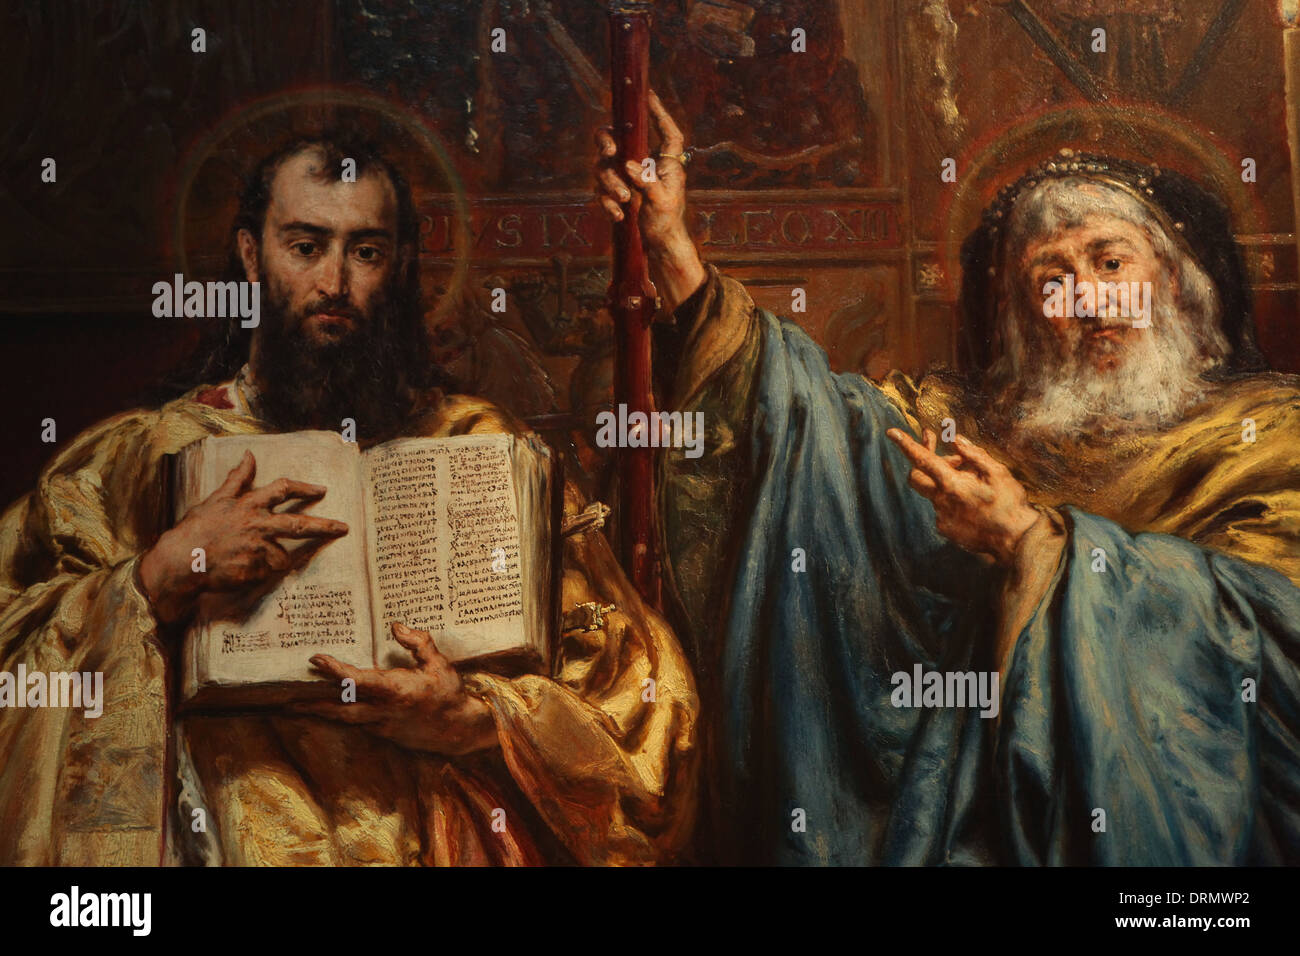 "La peinture de saints Cyrille et Méthode les Slaves' (1885) par le peintre polonais Jan Matejko. Banque D'Images